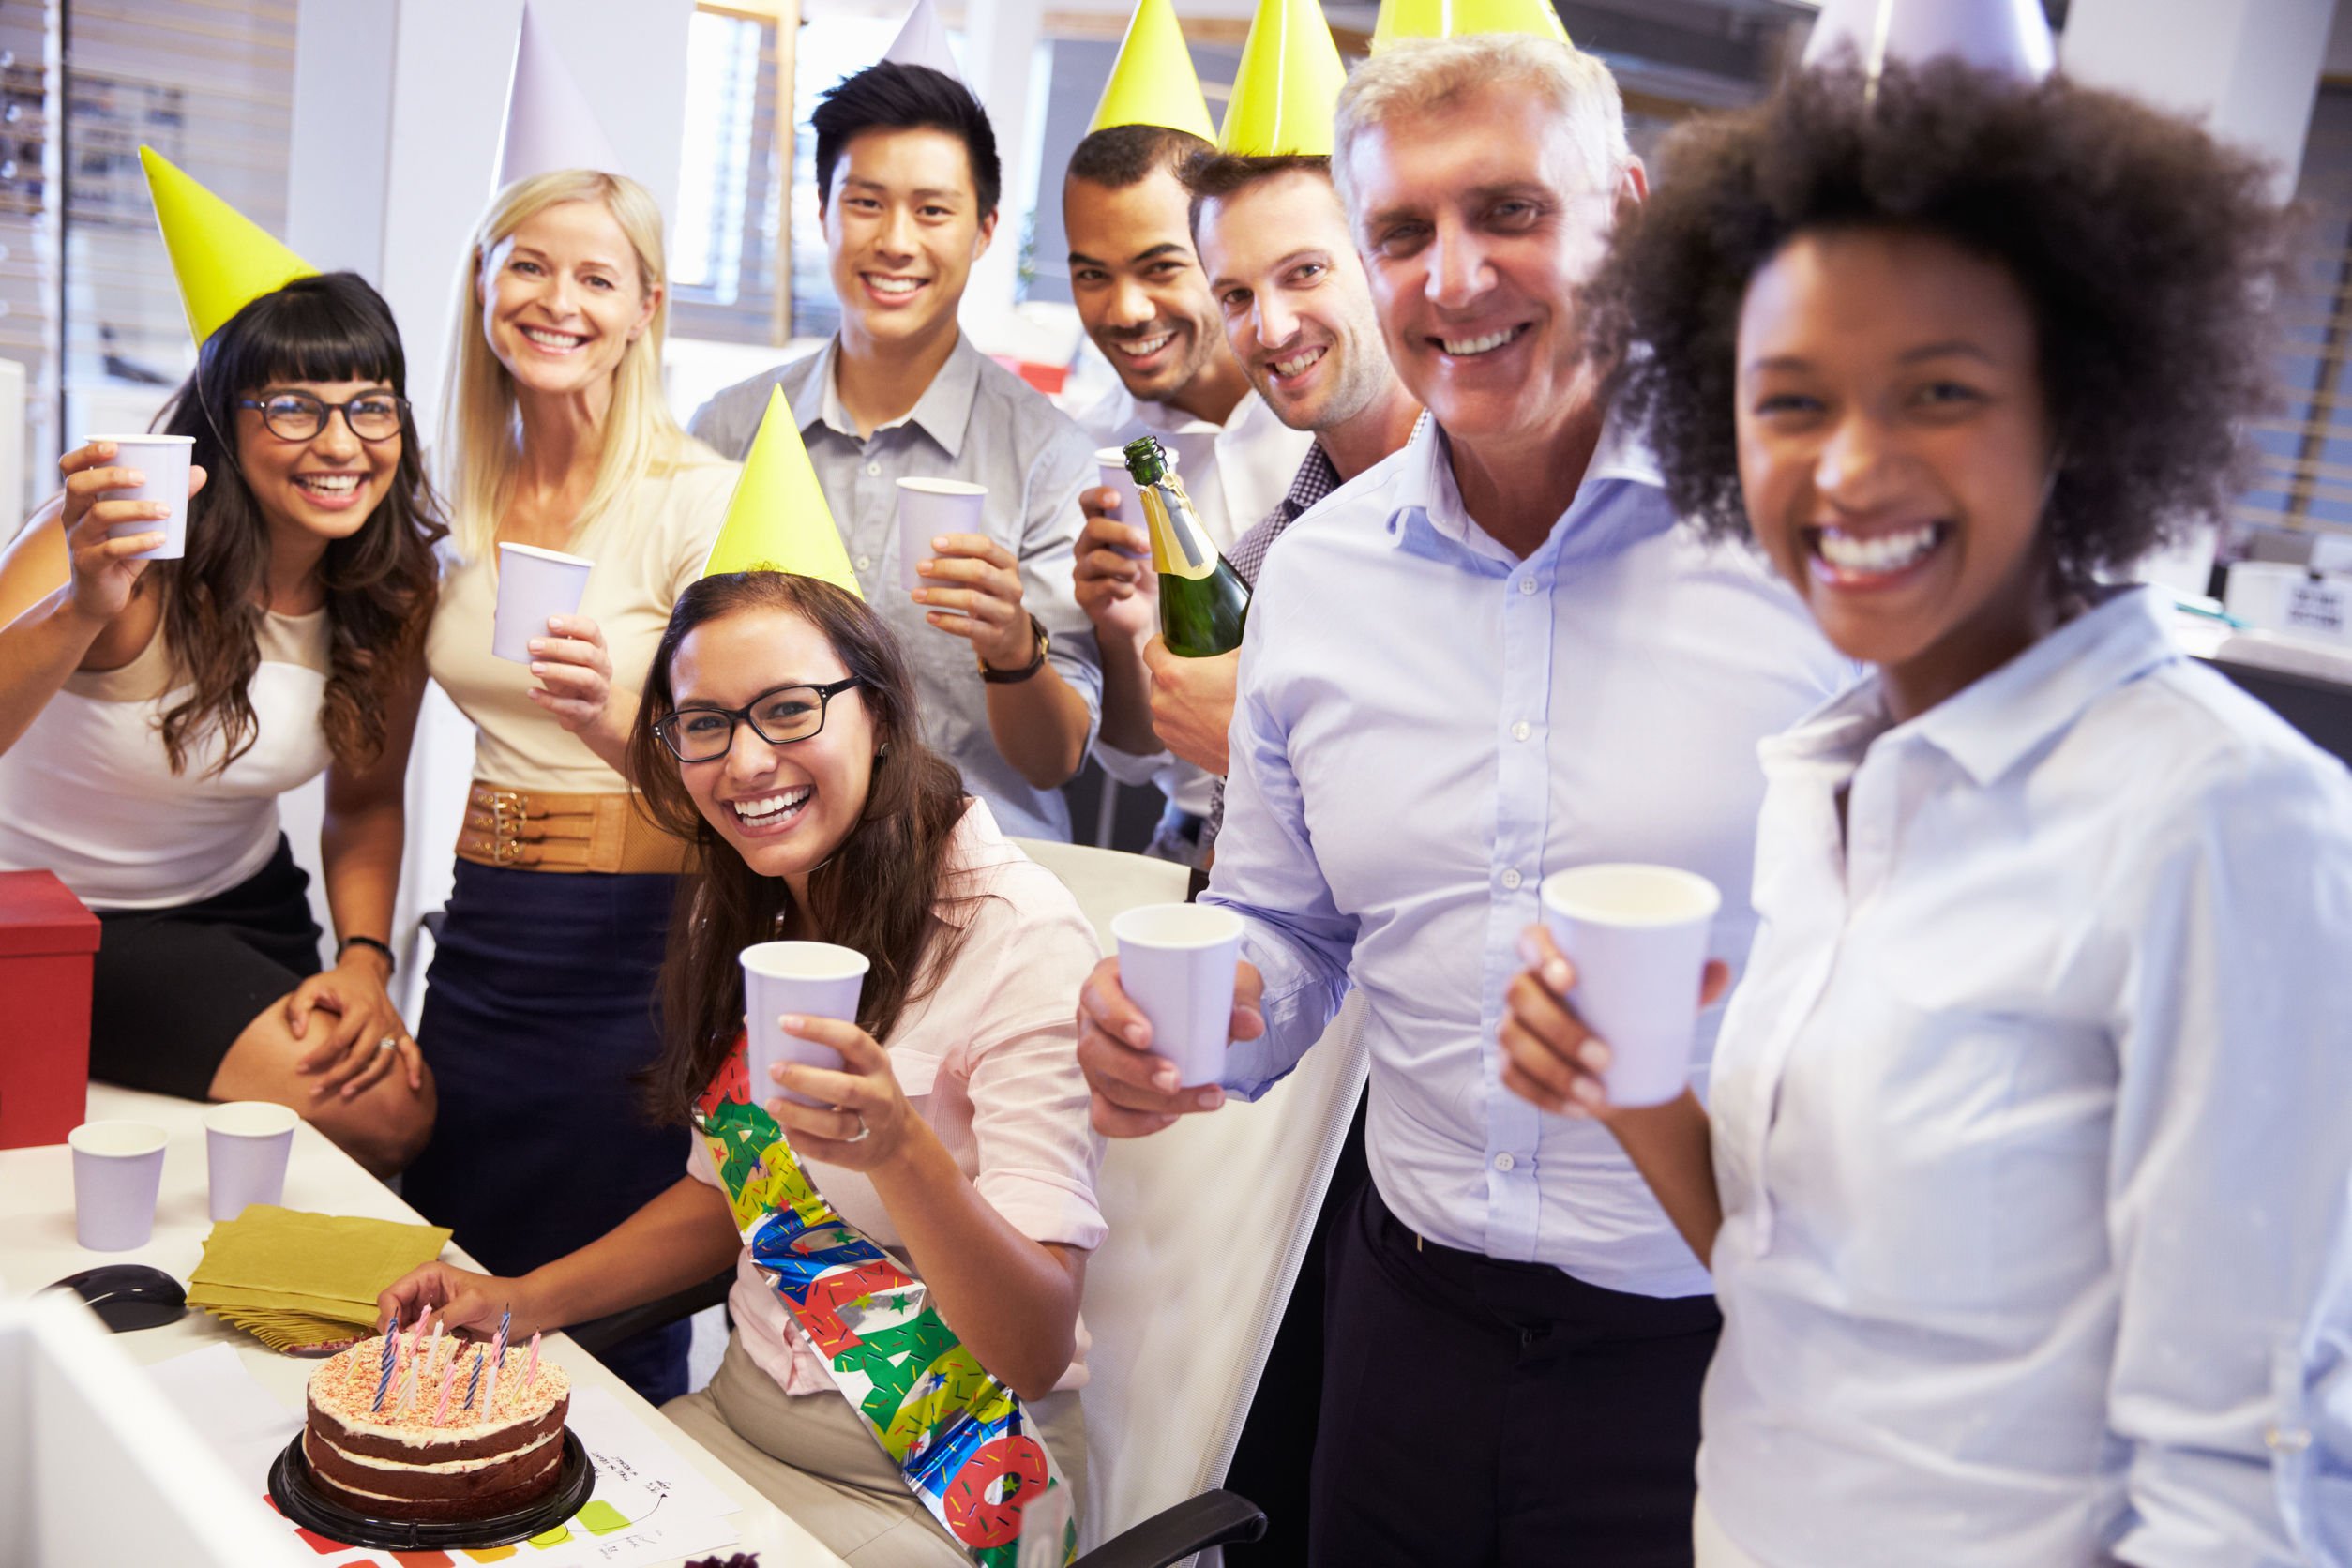 Празднование дня рождения в россии на английском. Корпоратив в офисе. День рождения в офисе. Празднование дня рождения коллеги. Студенты отмечают день рождения.